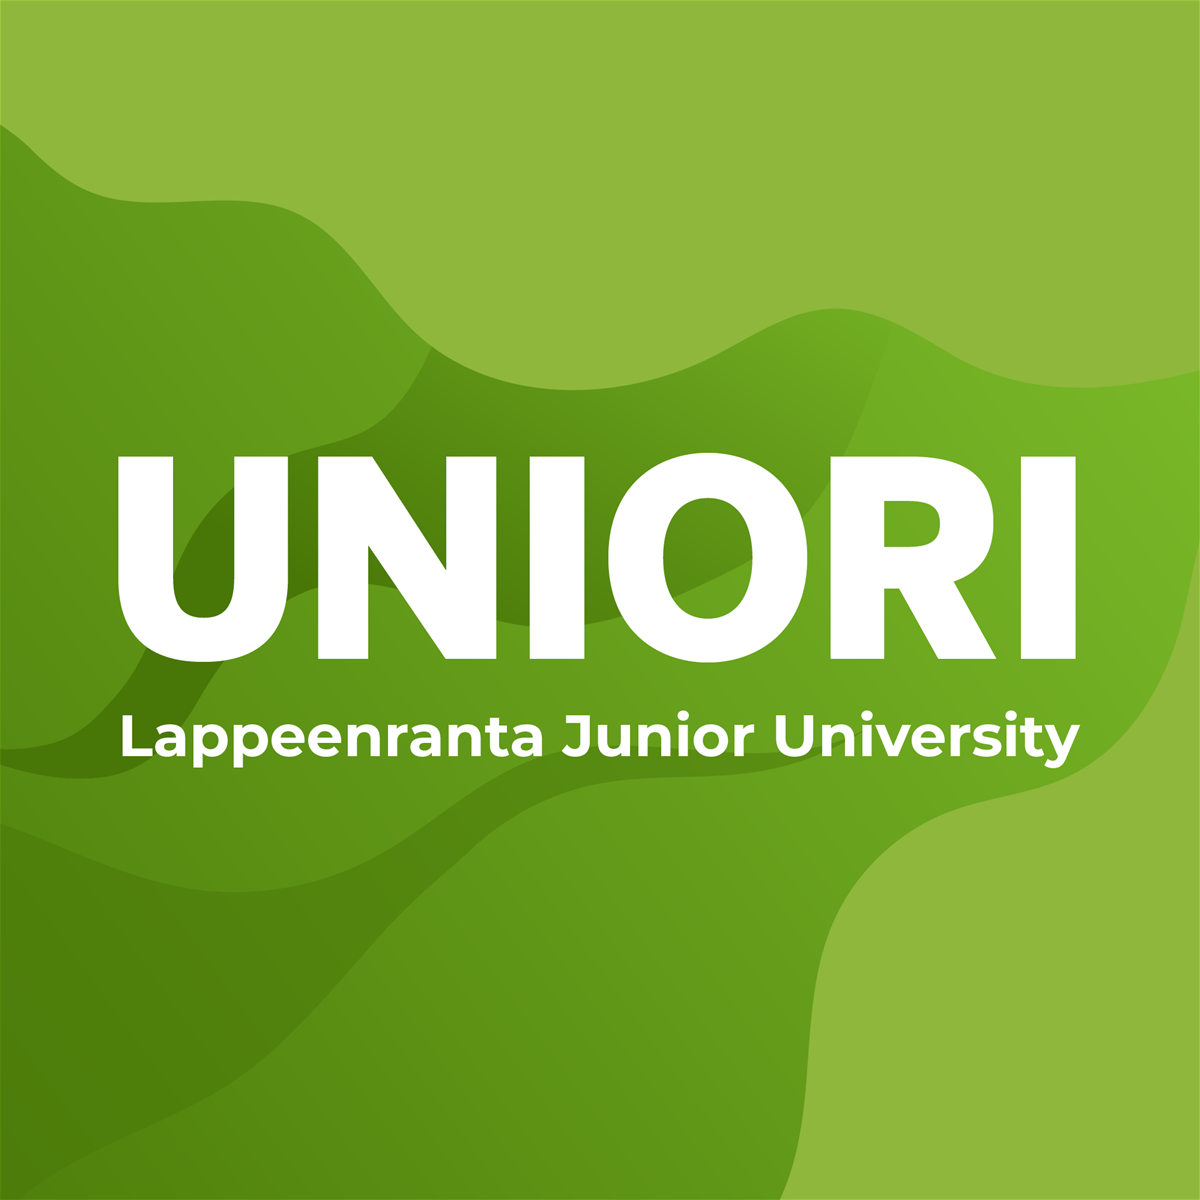 Uniori. Lappeenranta Junior University.